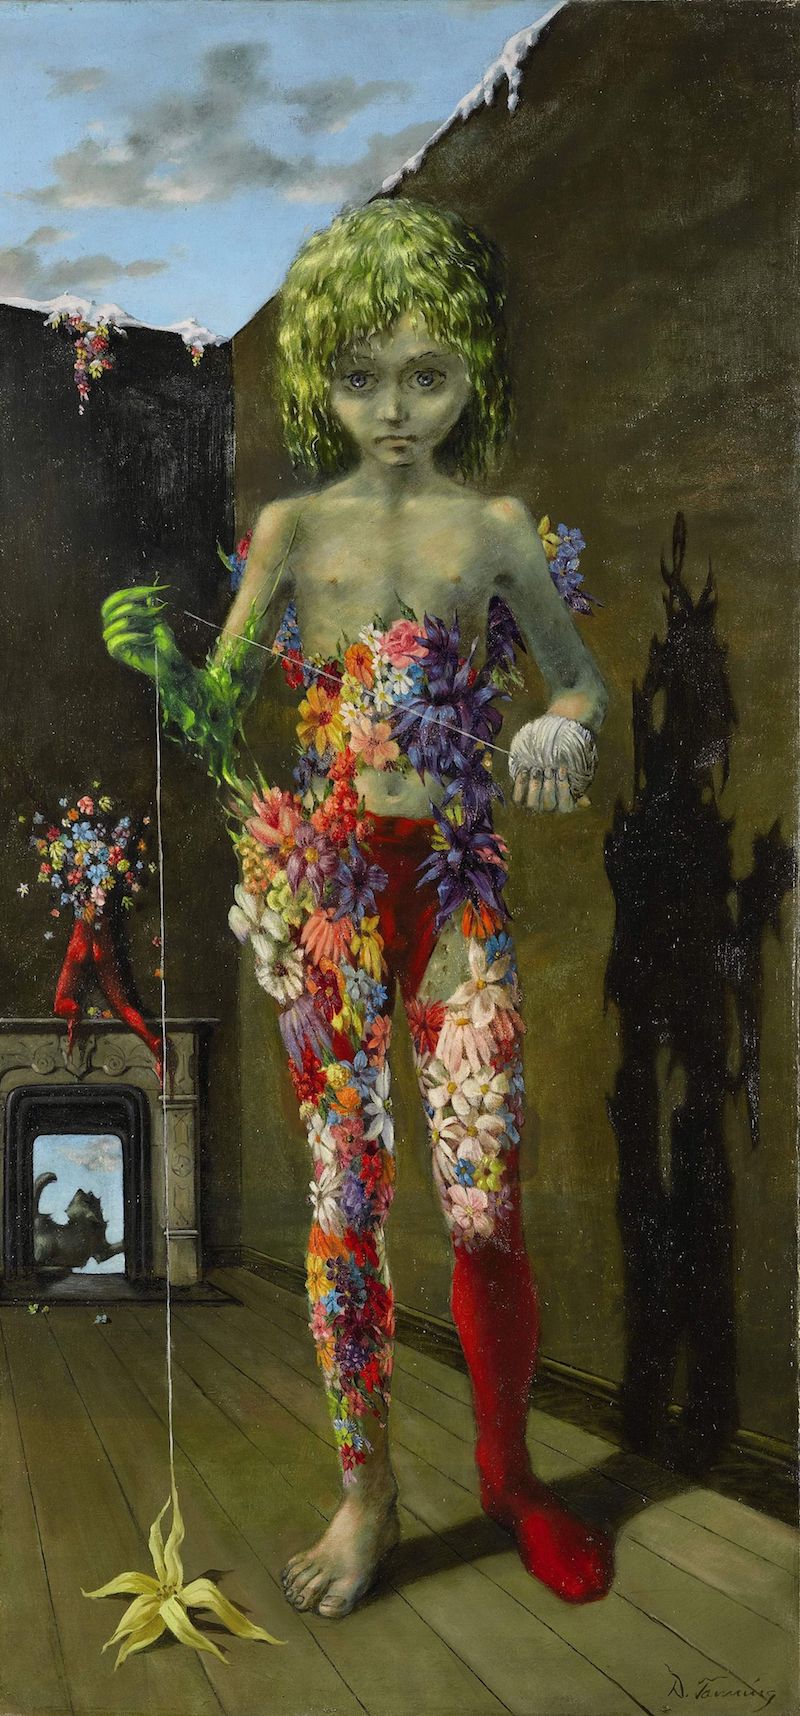 Collezione Peggy Guggenheim – Surrealismo e magia. La modernità incantata: A cura di Gražina Subelytė, 9 aprile – 26 settembre, 2022